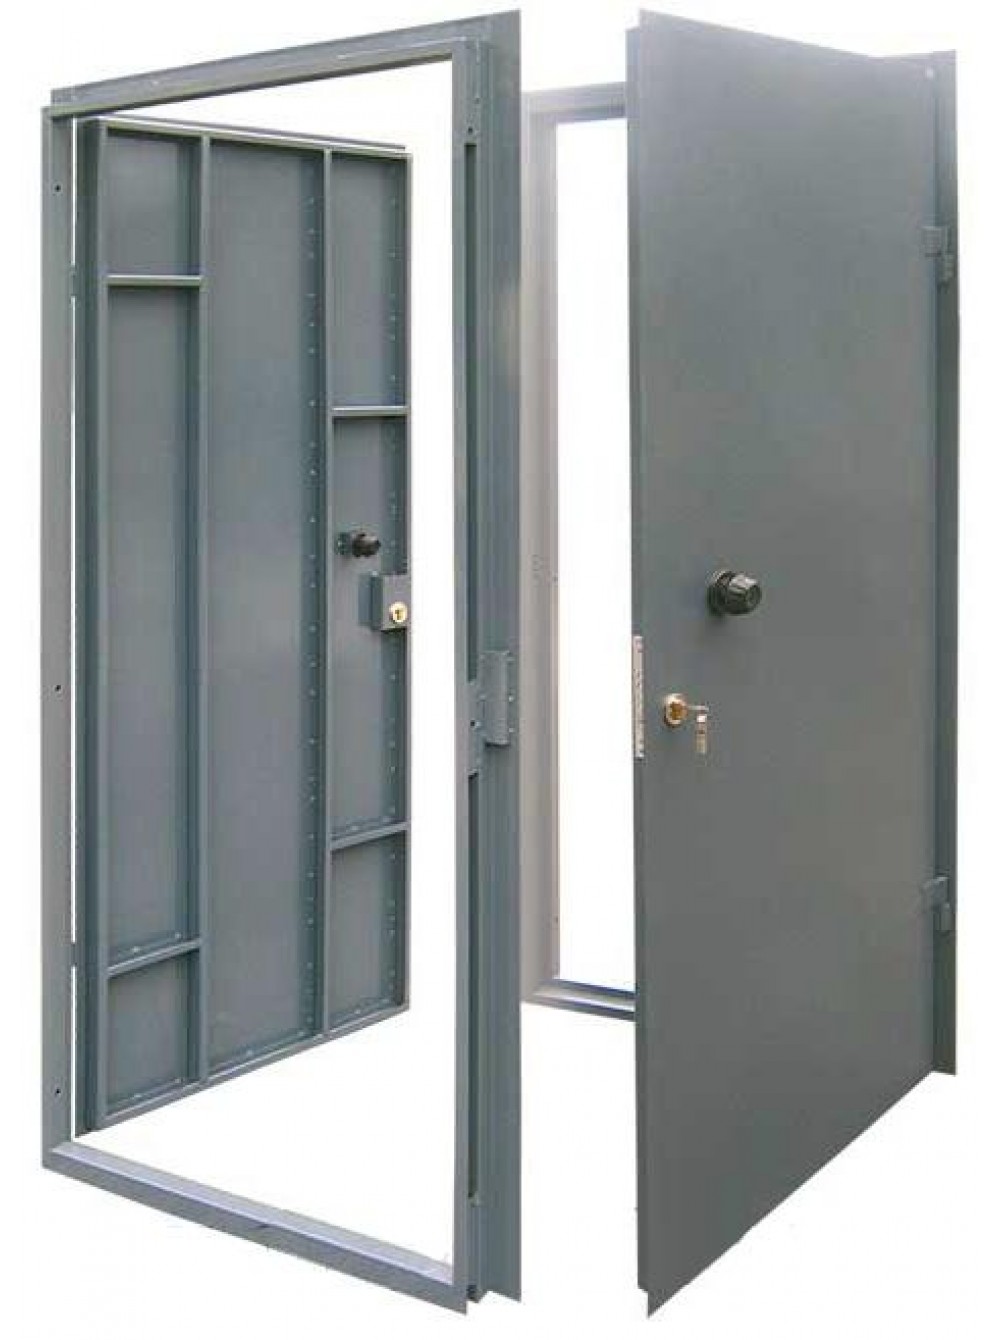 Технические железные двери. Дверь металлическая неутепленная 790*1420. Двери стальные утепленные двупольные 2дсу 2.02.4. Дверь техническая металлическая. Дверь металлическая сварная.